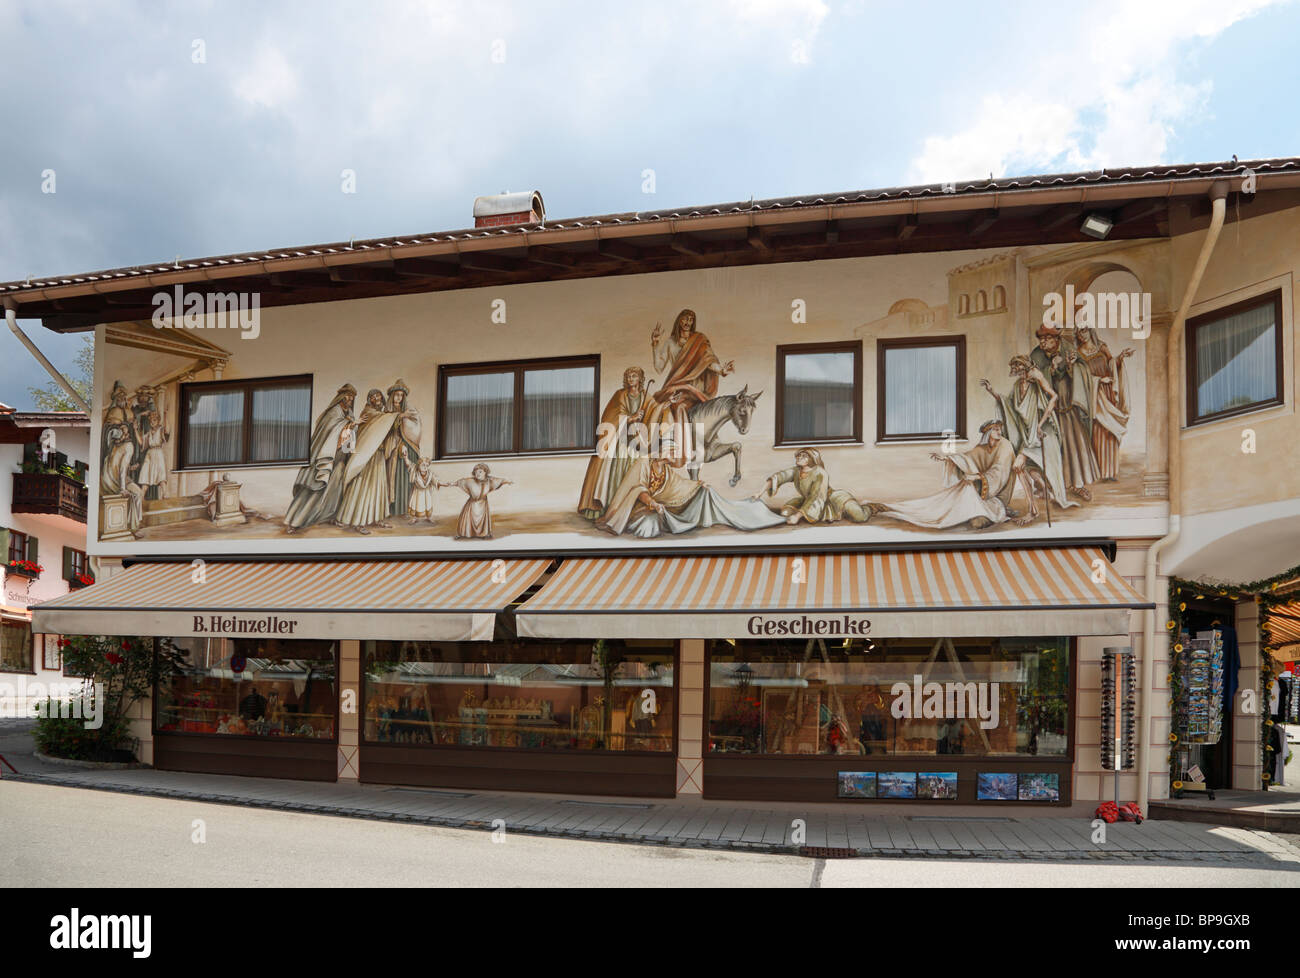 Maison typique murale sur le centre-ville de Garmisch-Partenkirchen, Oberammergau près de Bavière dans le sud de l'Allemagne. Contes de Grimm. Banque D'Images